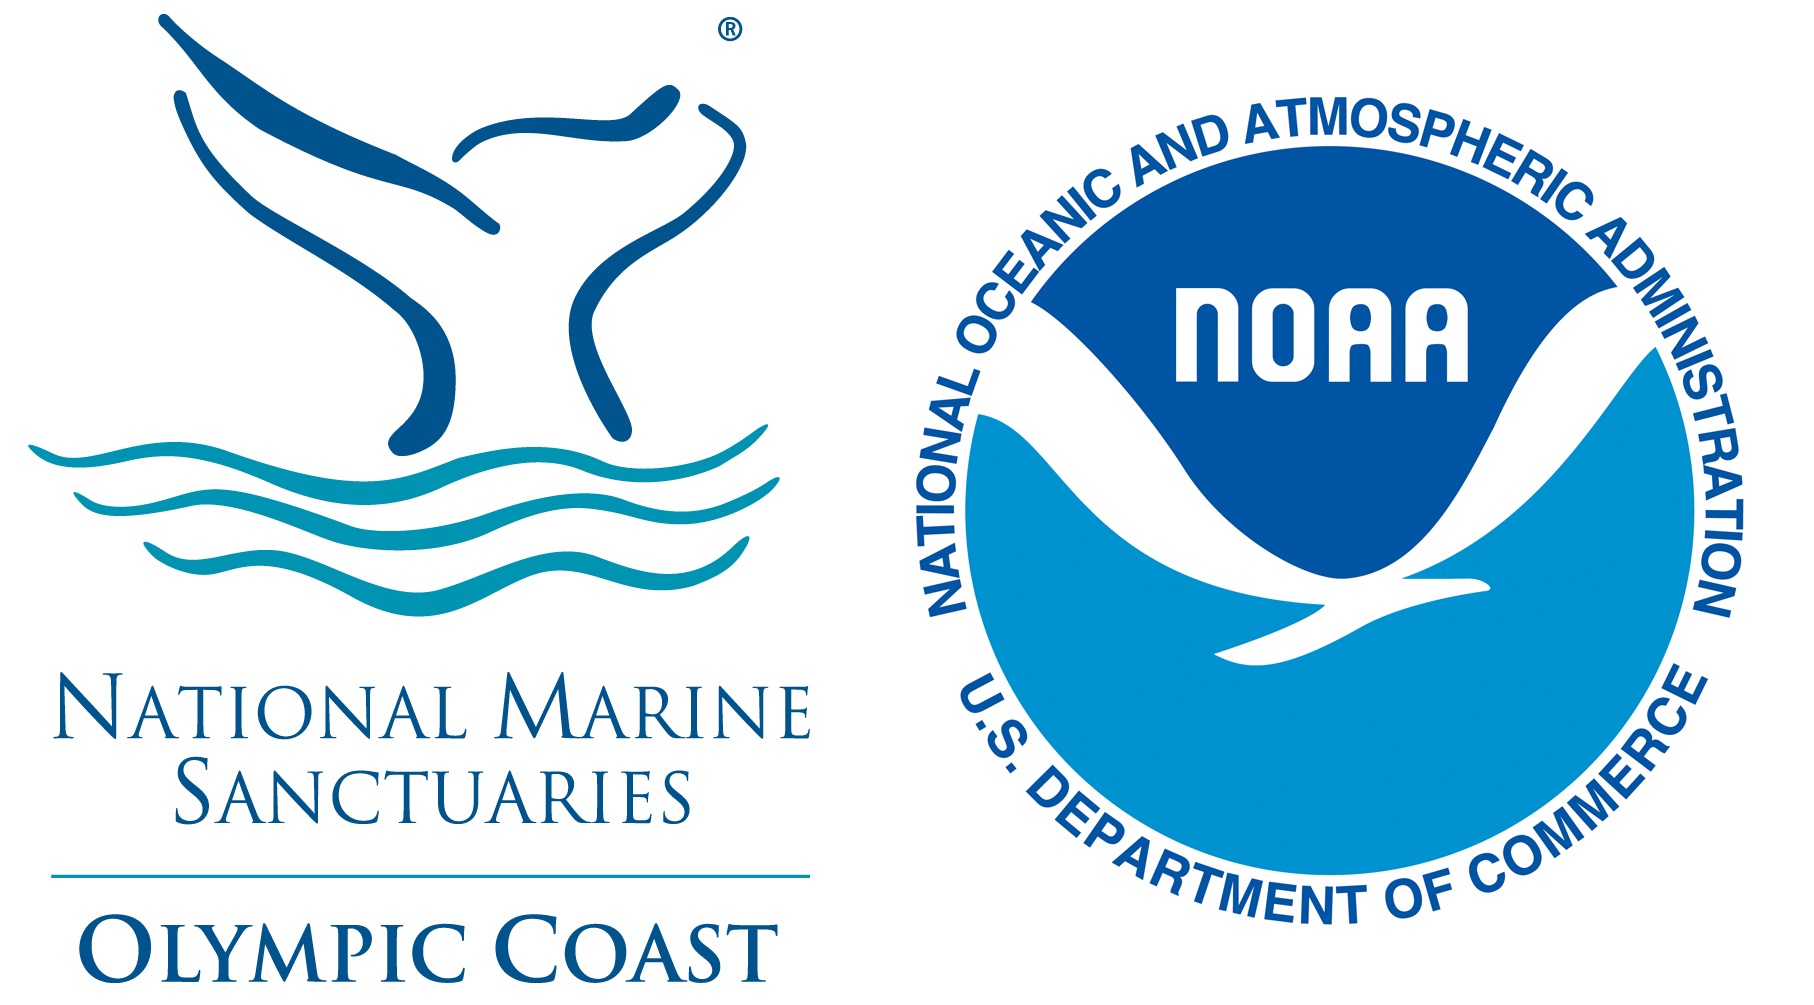 The Olympic Coast National Marine Sanctuary logo